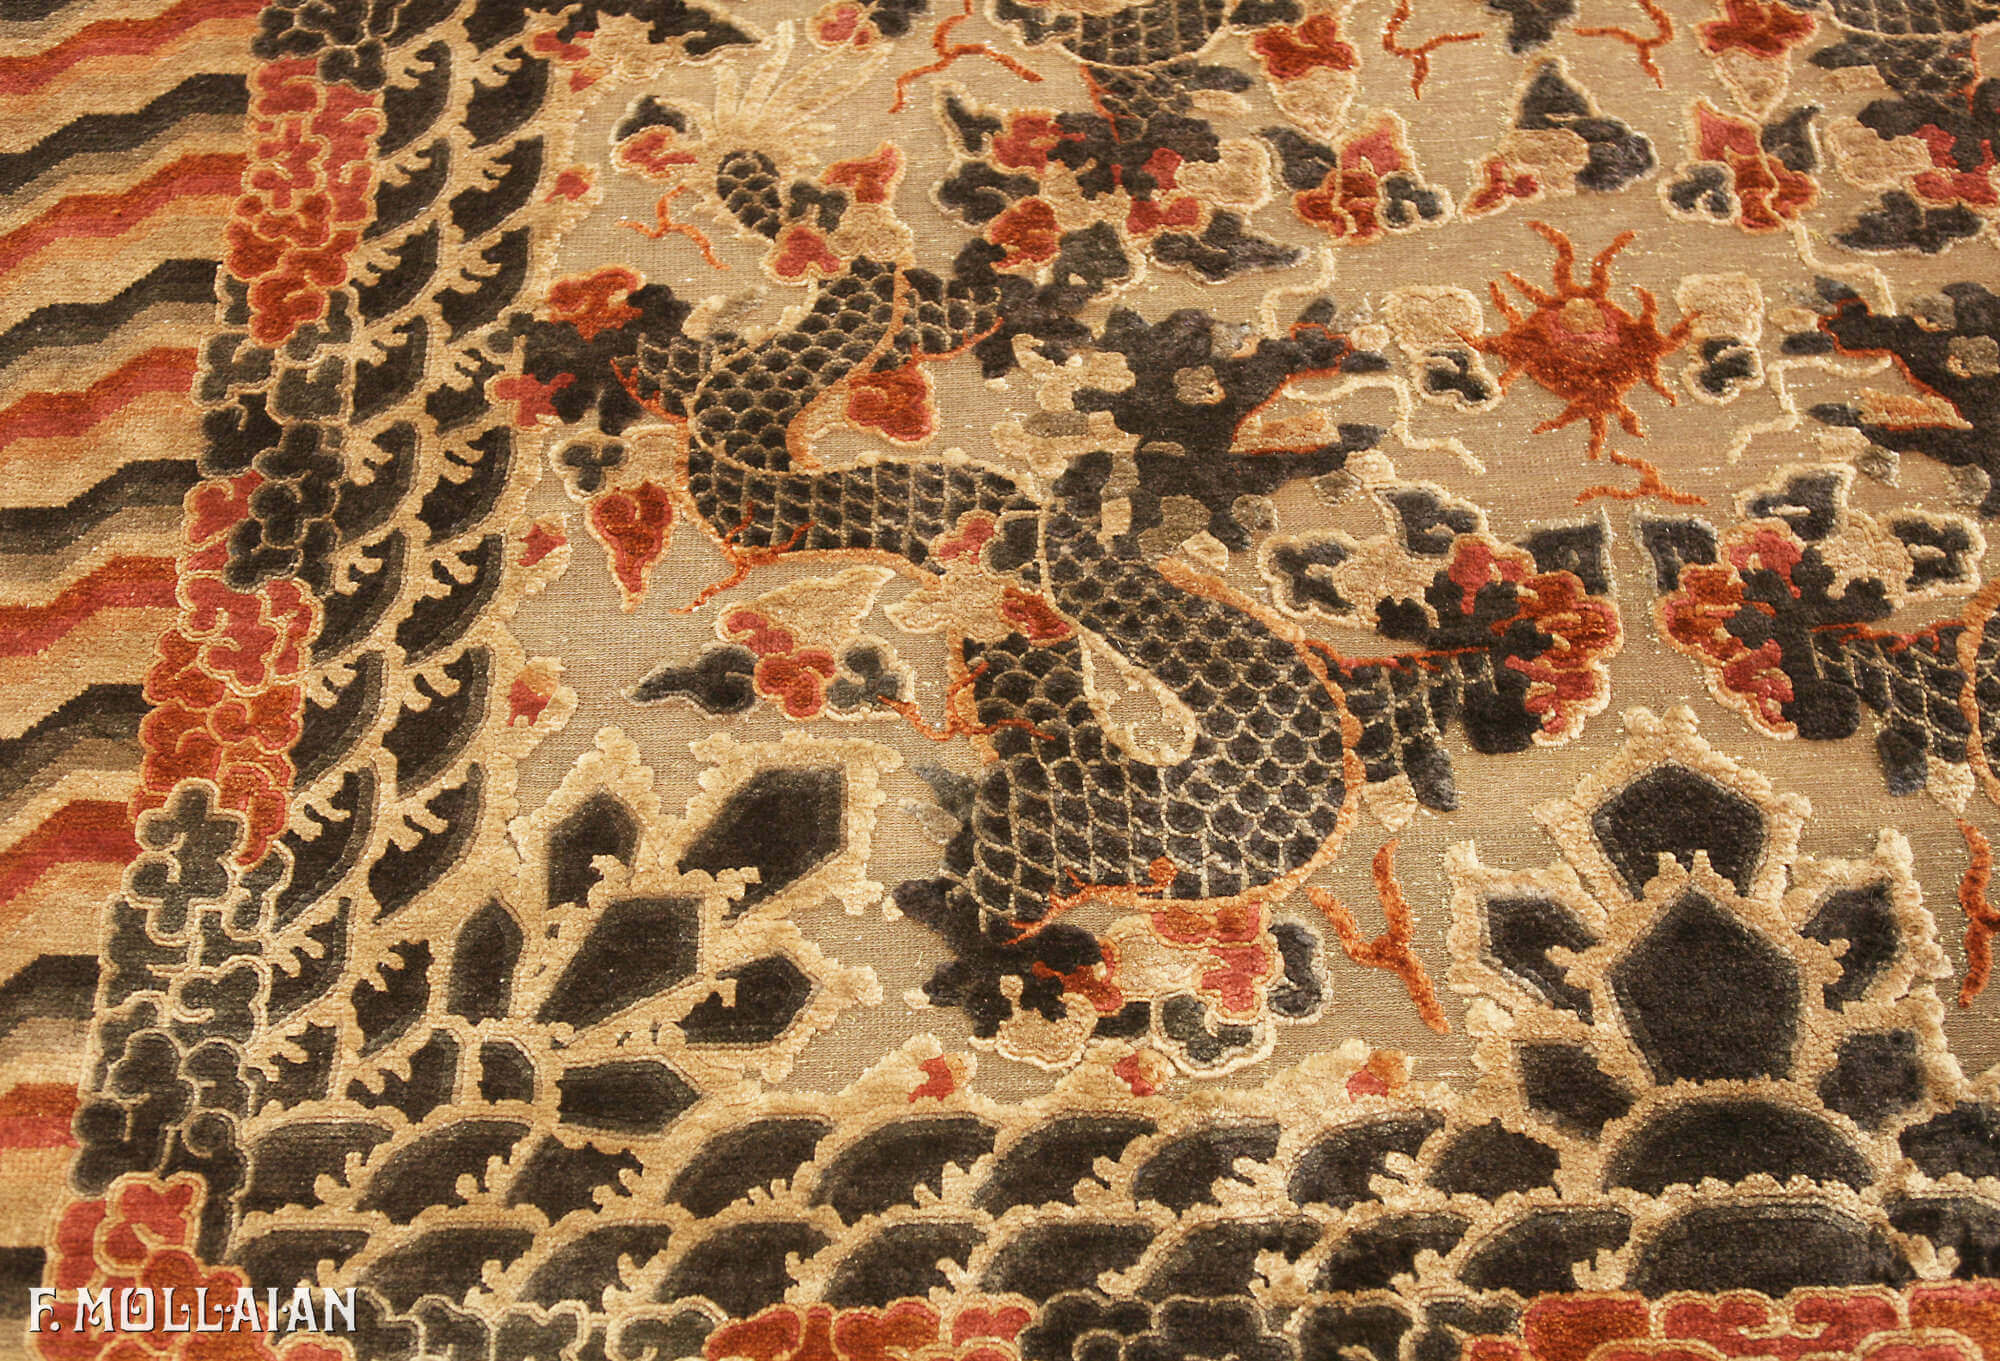 Alfombra de seda y metal antigua del Palacio Imperial de China n°:71420945